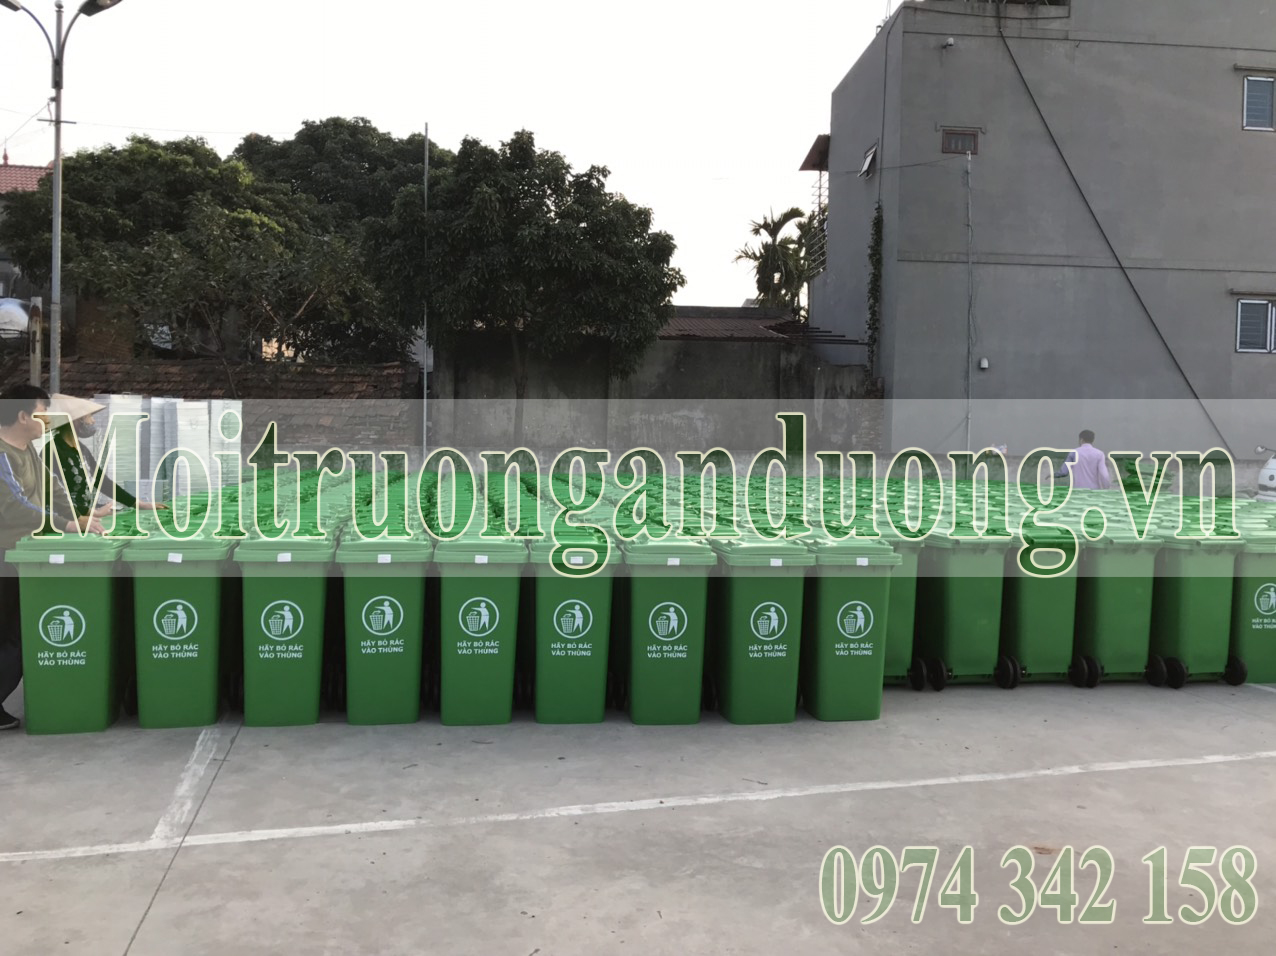 Cung cấp 1580 thùng rác công cộng 120 lít tại Thuận Thành Bắc Ninh